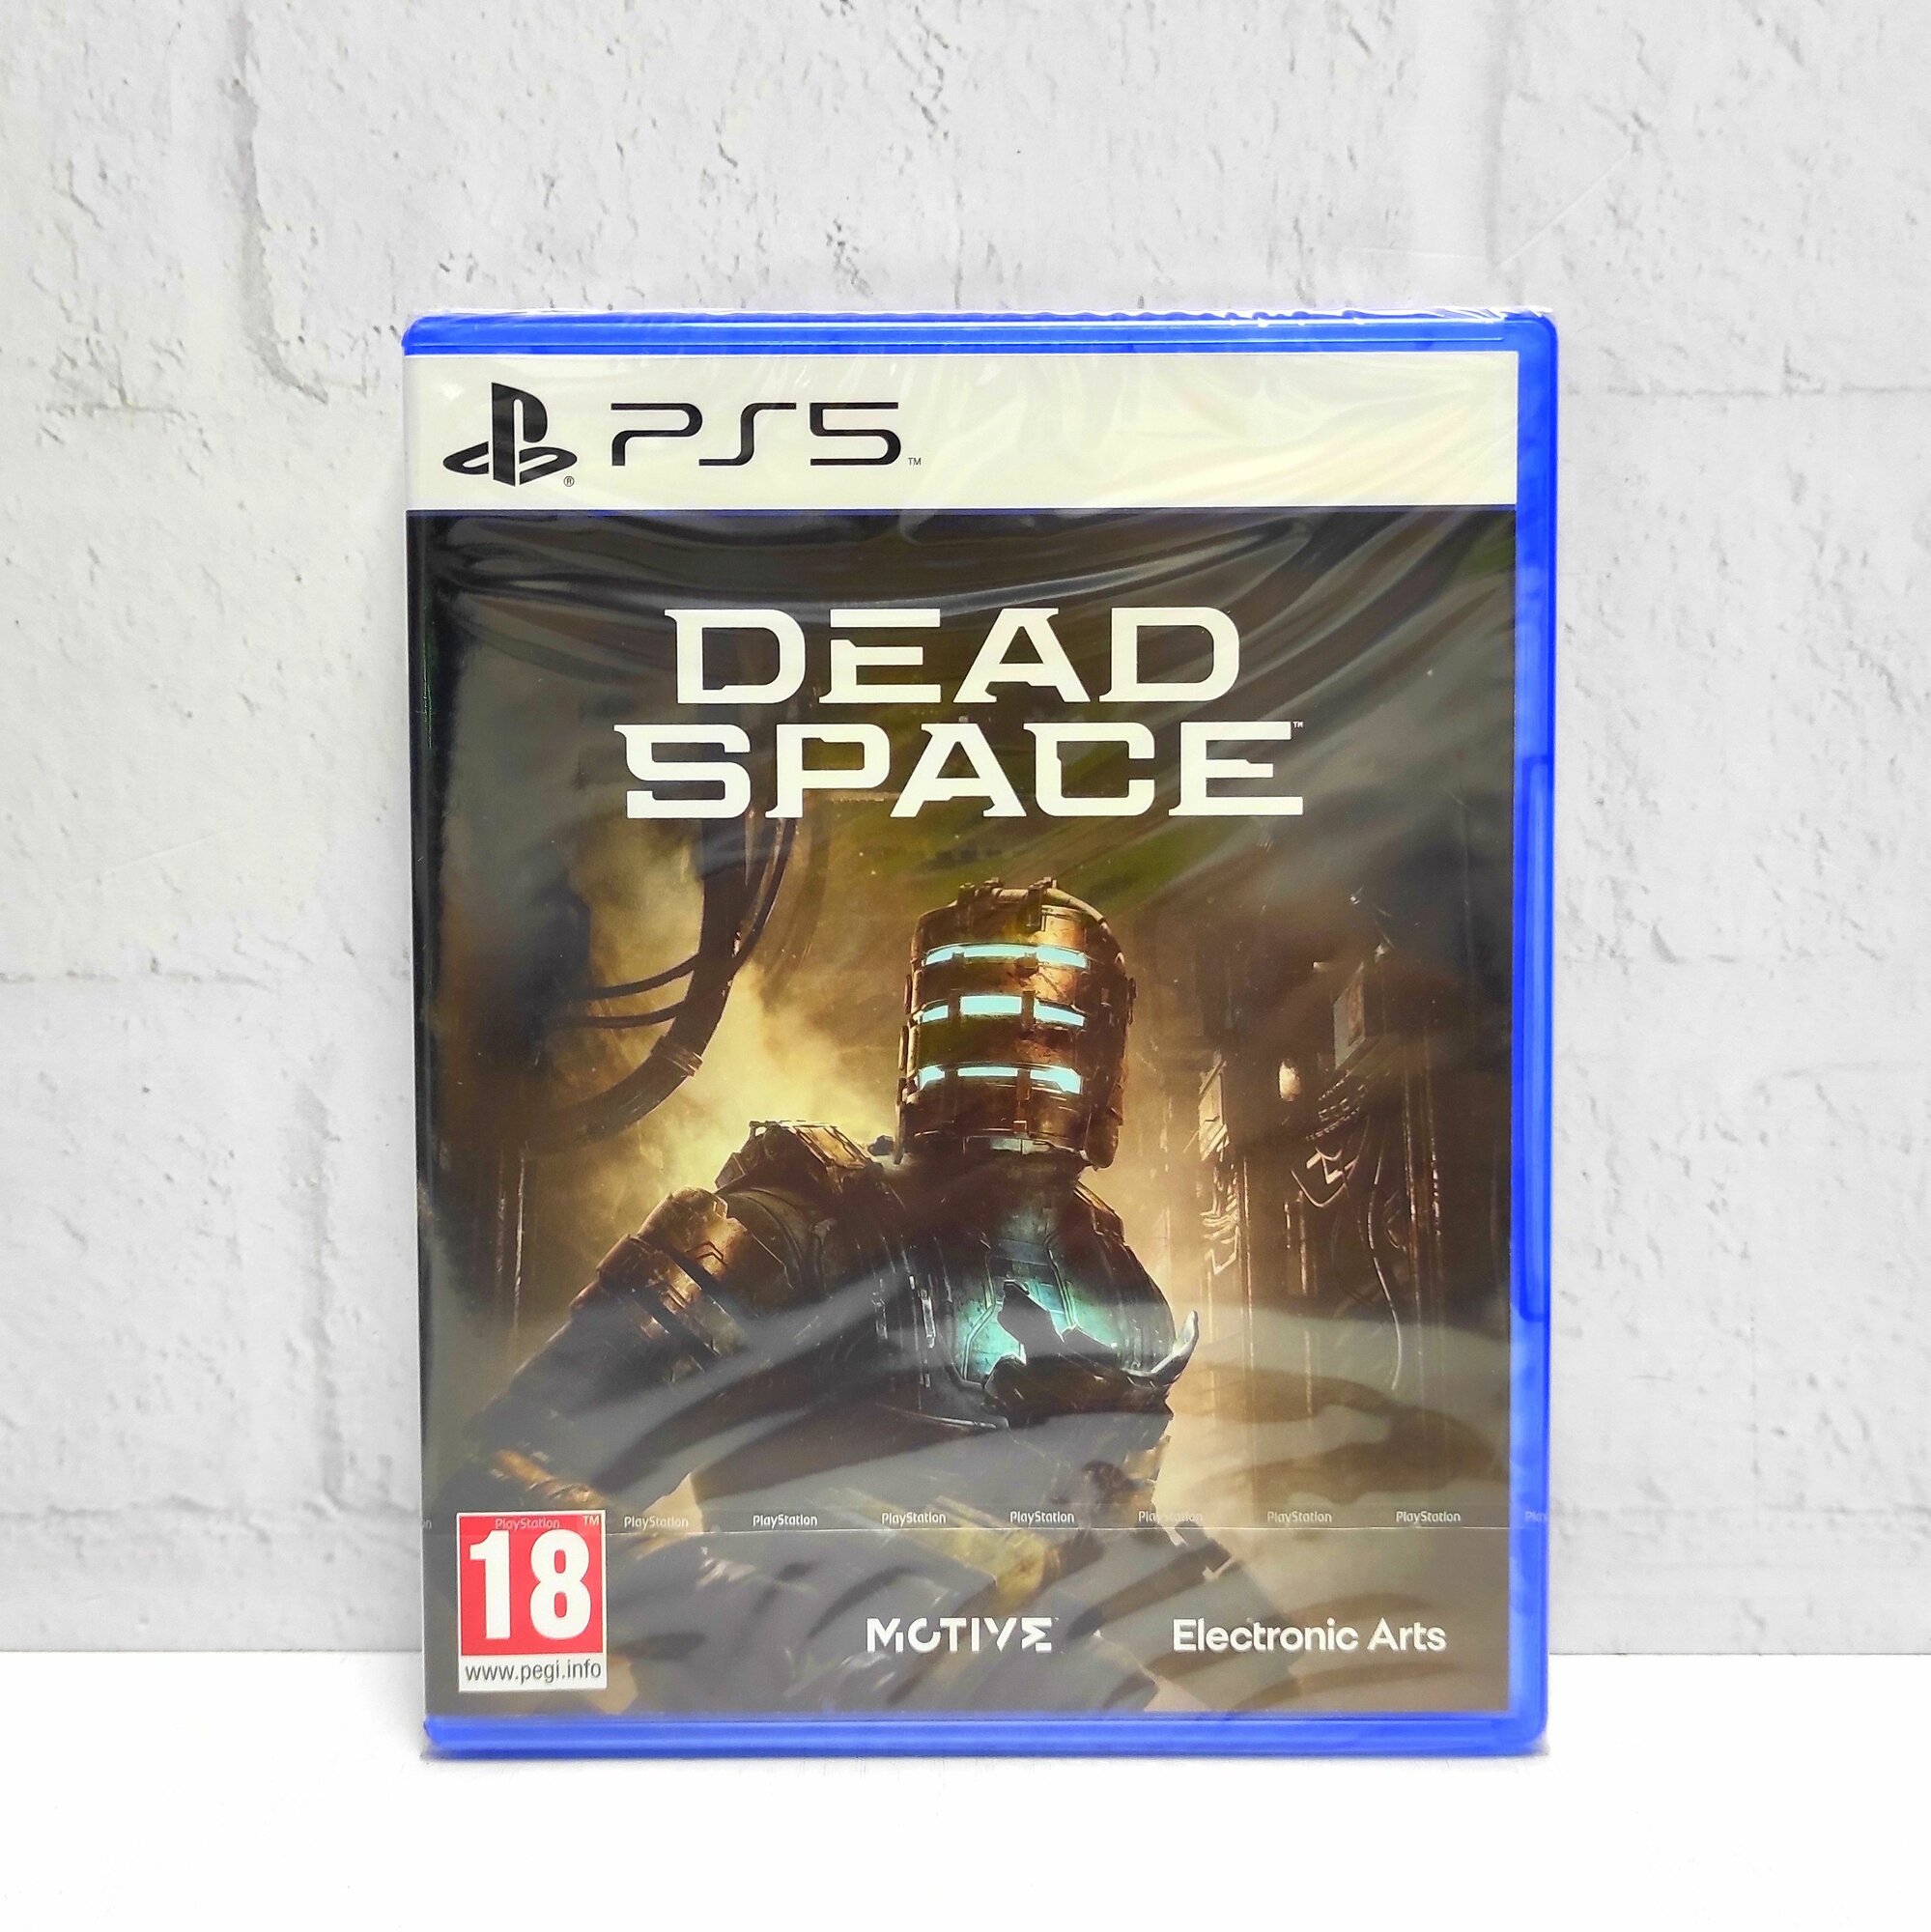 Dead Space Remake Видеоигра на диске PS5